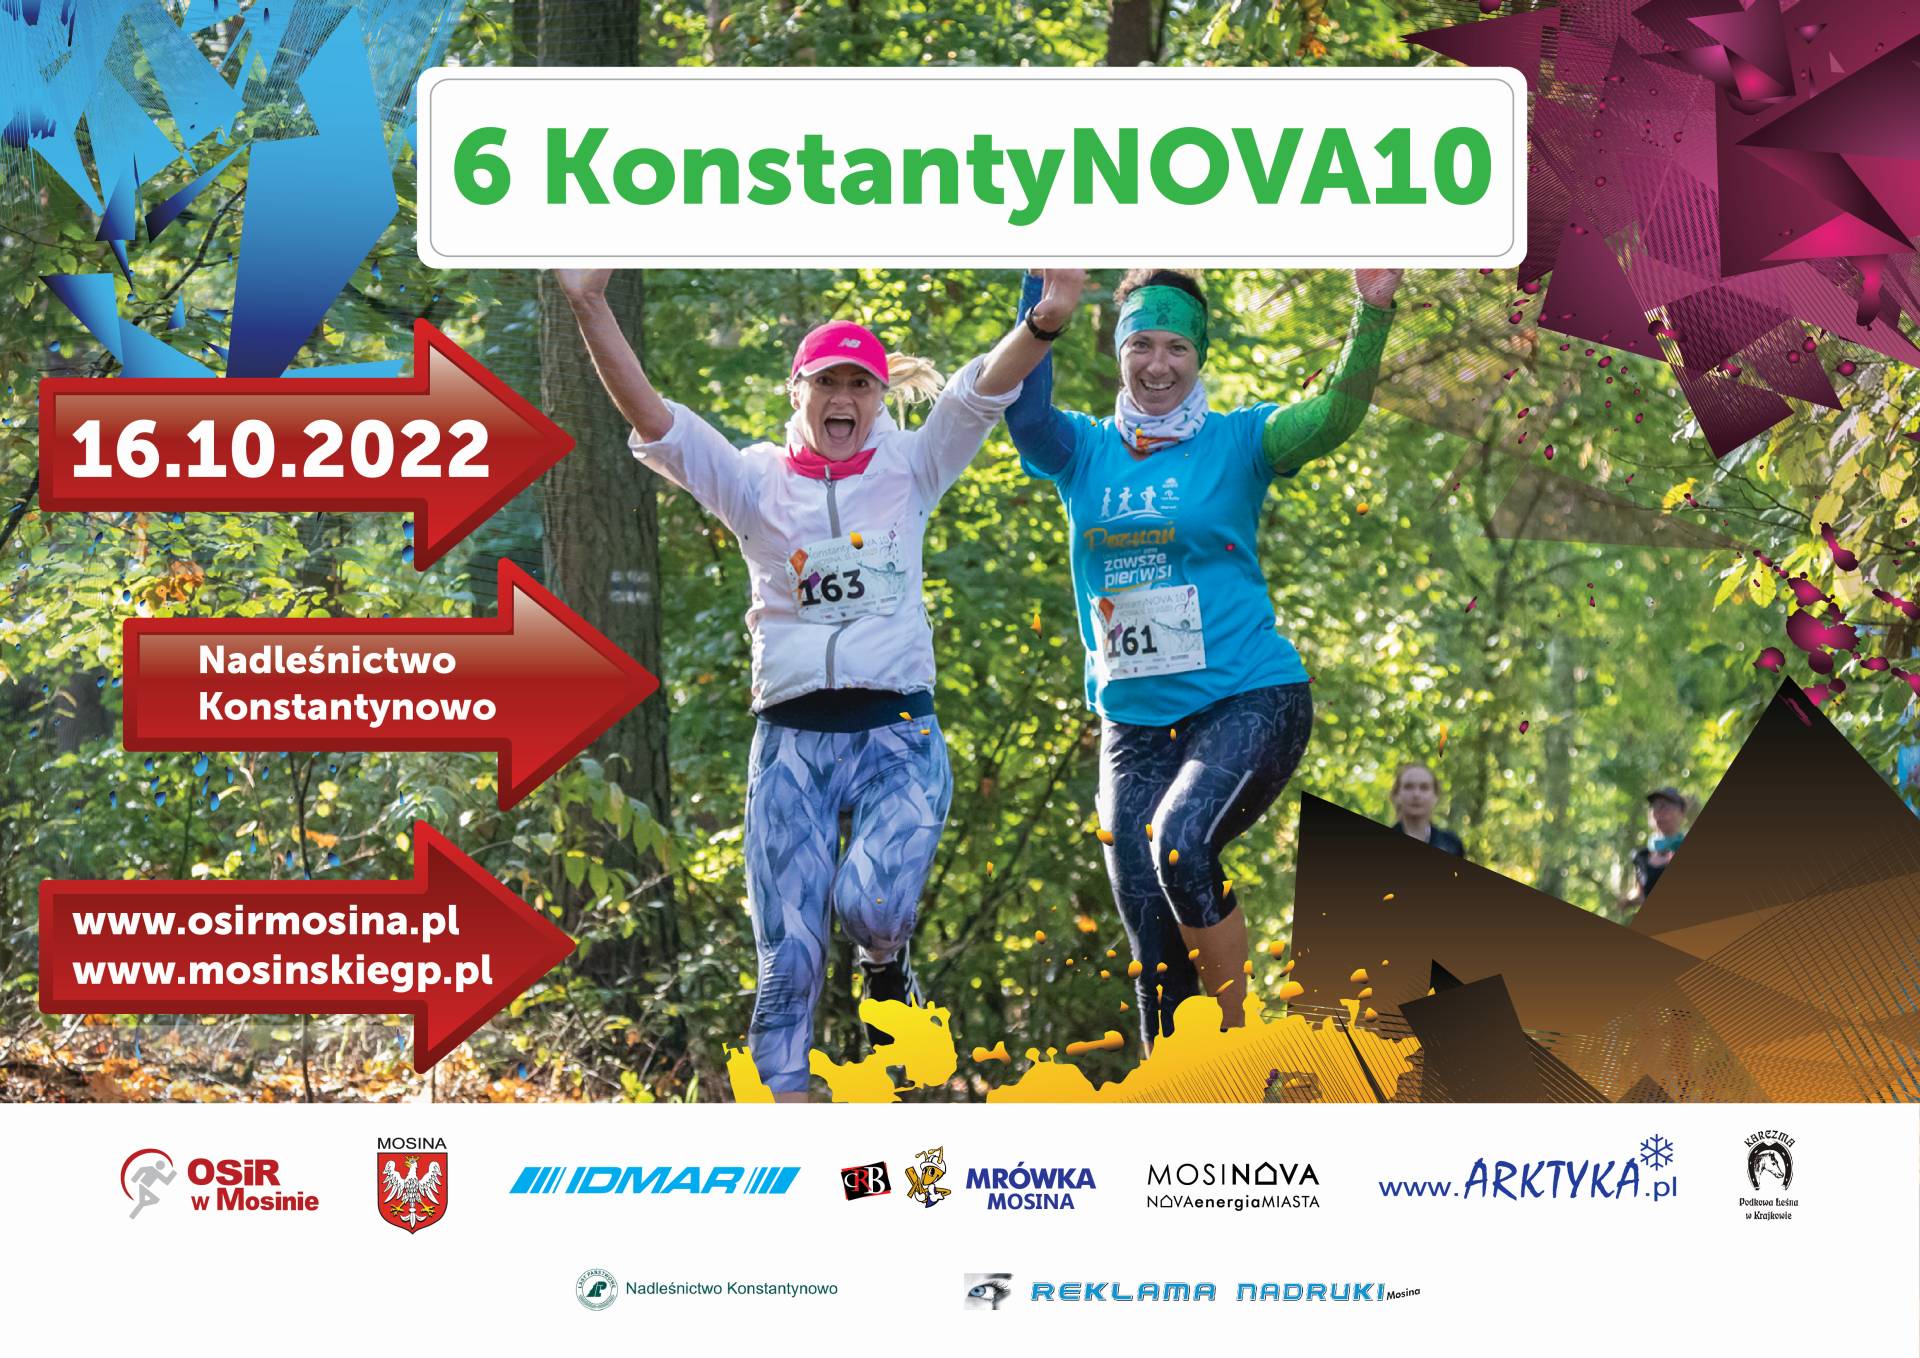 plakat informujący o biegu 6 Konstantynova 10 w dniu 16 października 2022 roku